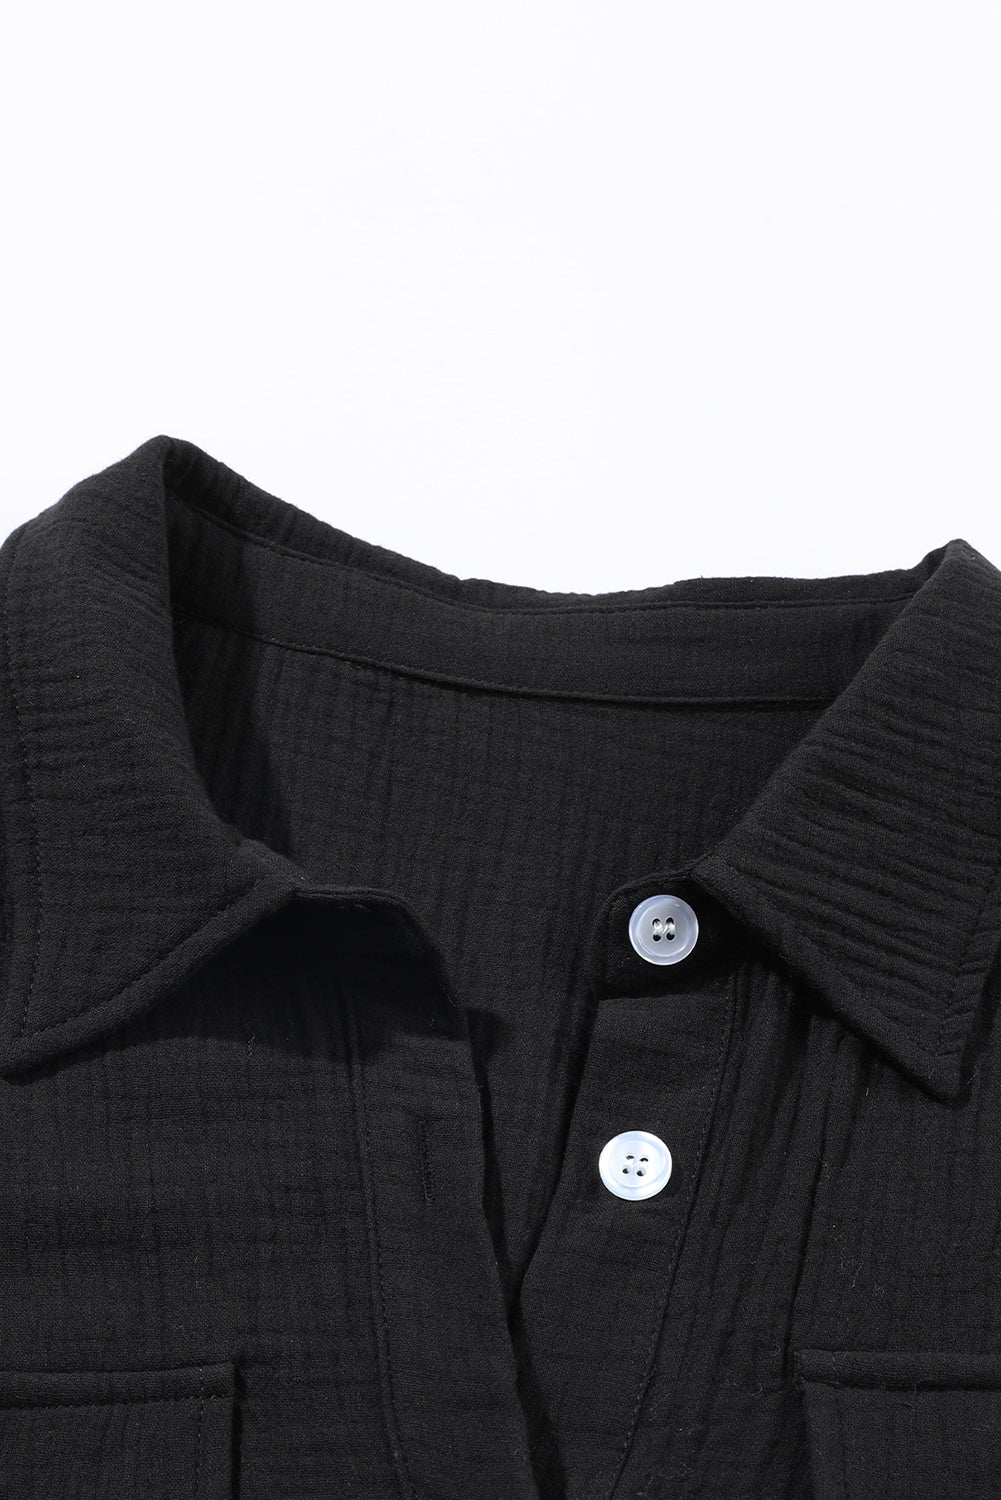 Crna haljina-košulja s teksturom na kopčanje veće veličine